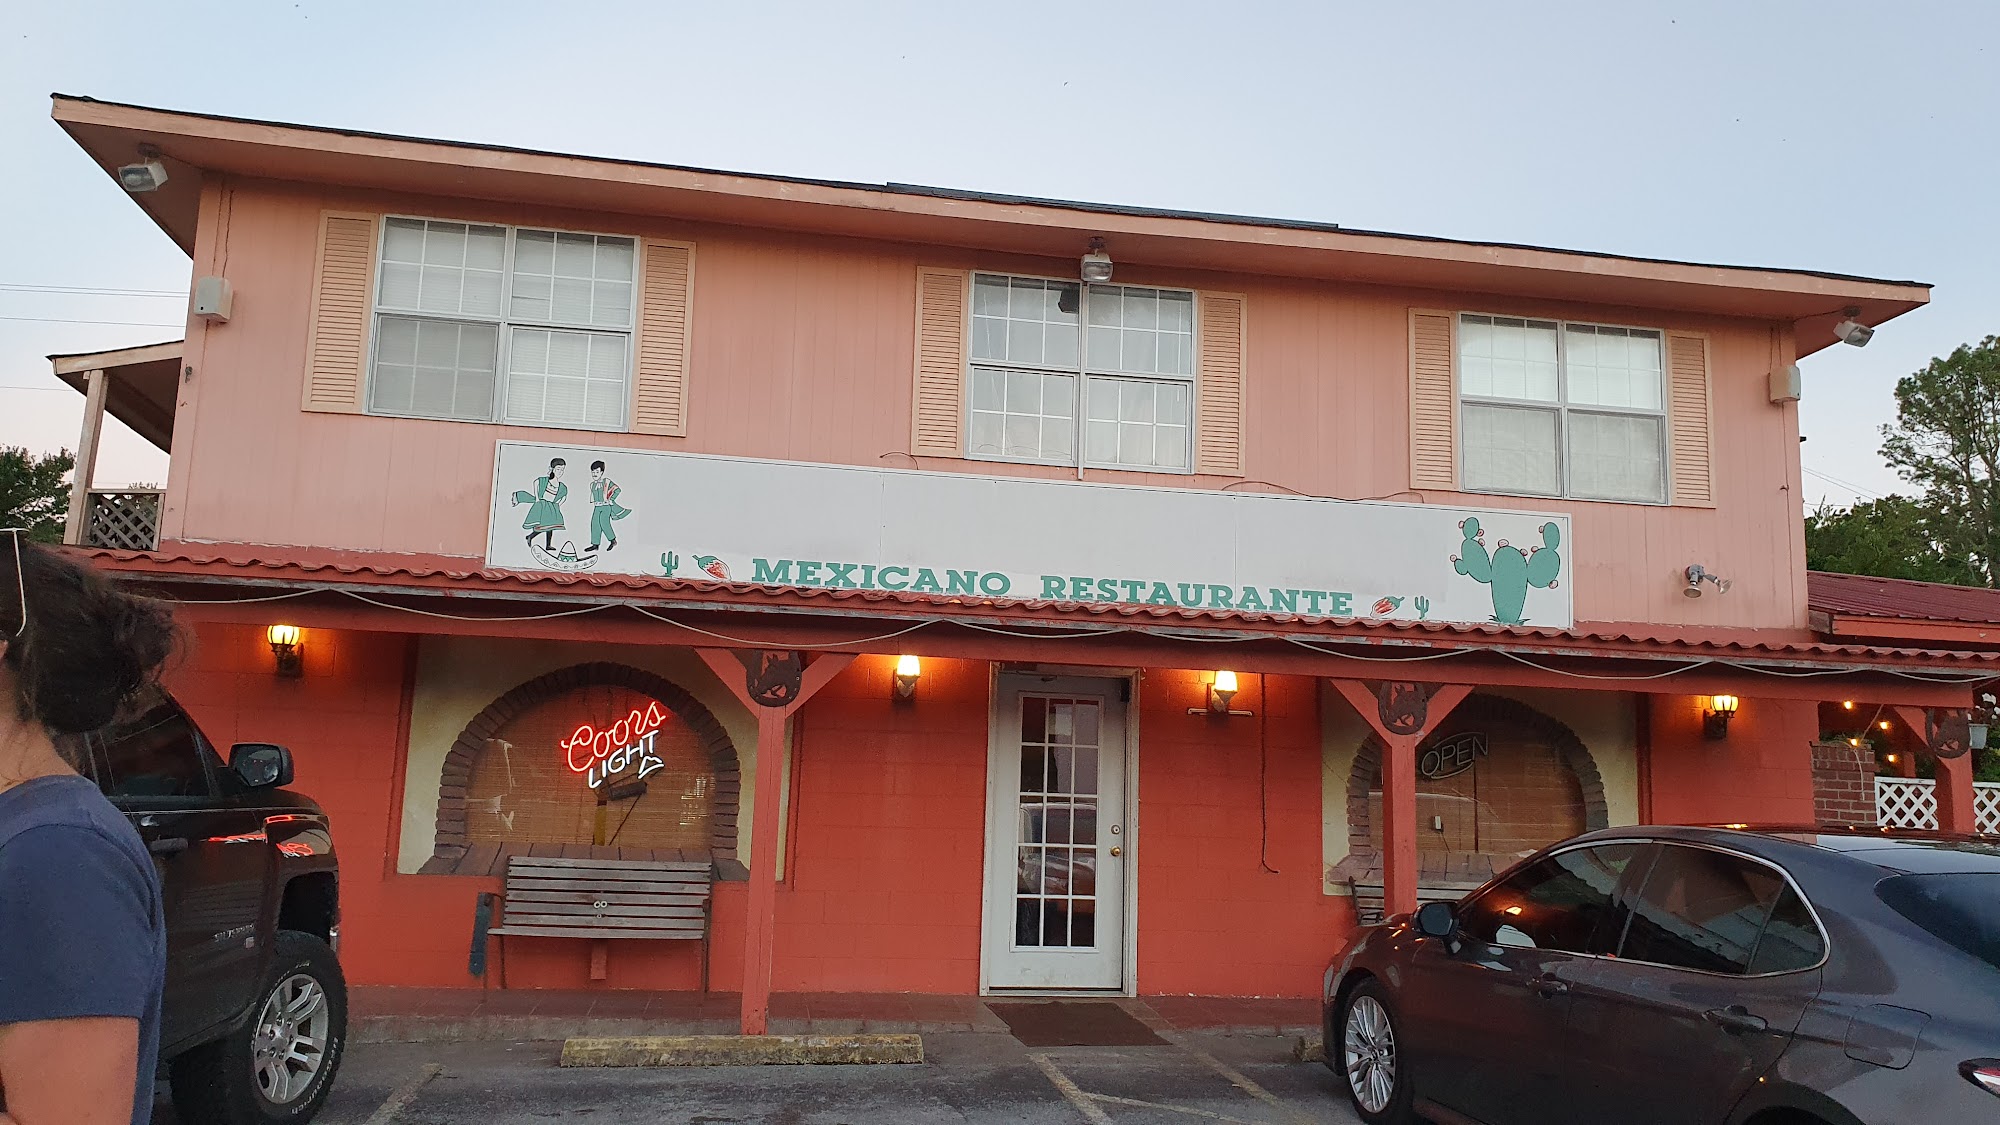 La Ranchera Mexican Restaurant